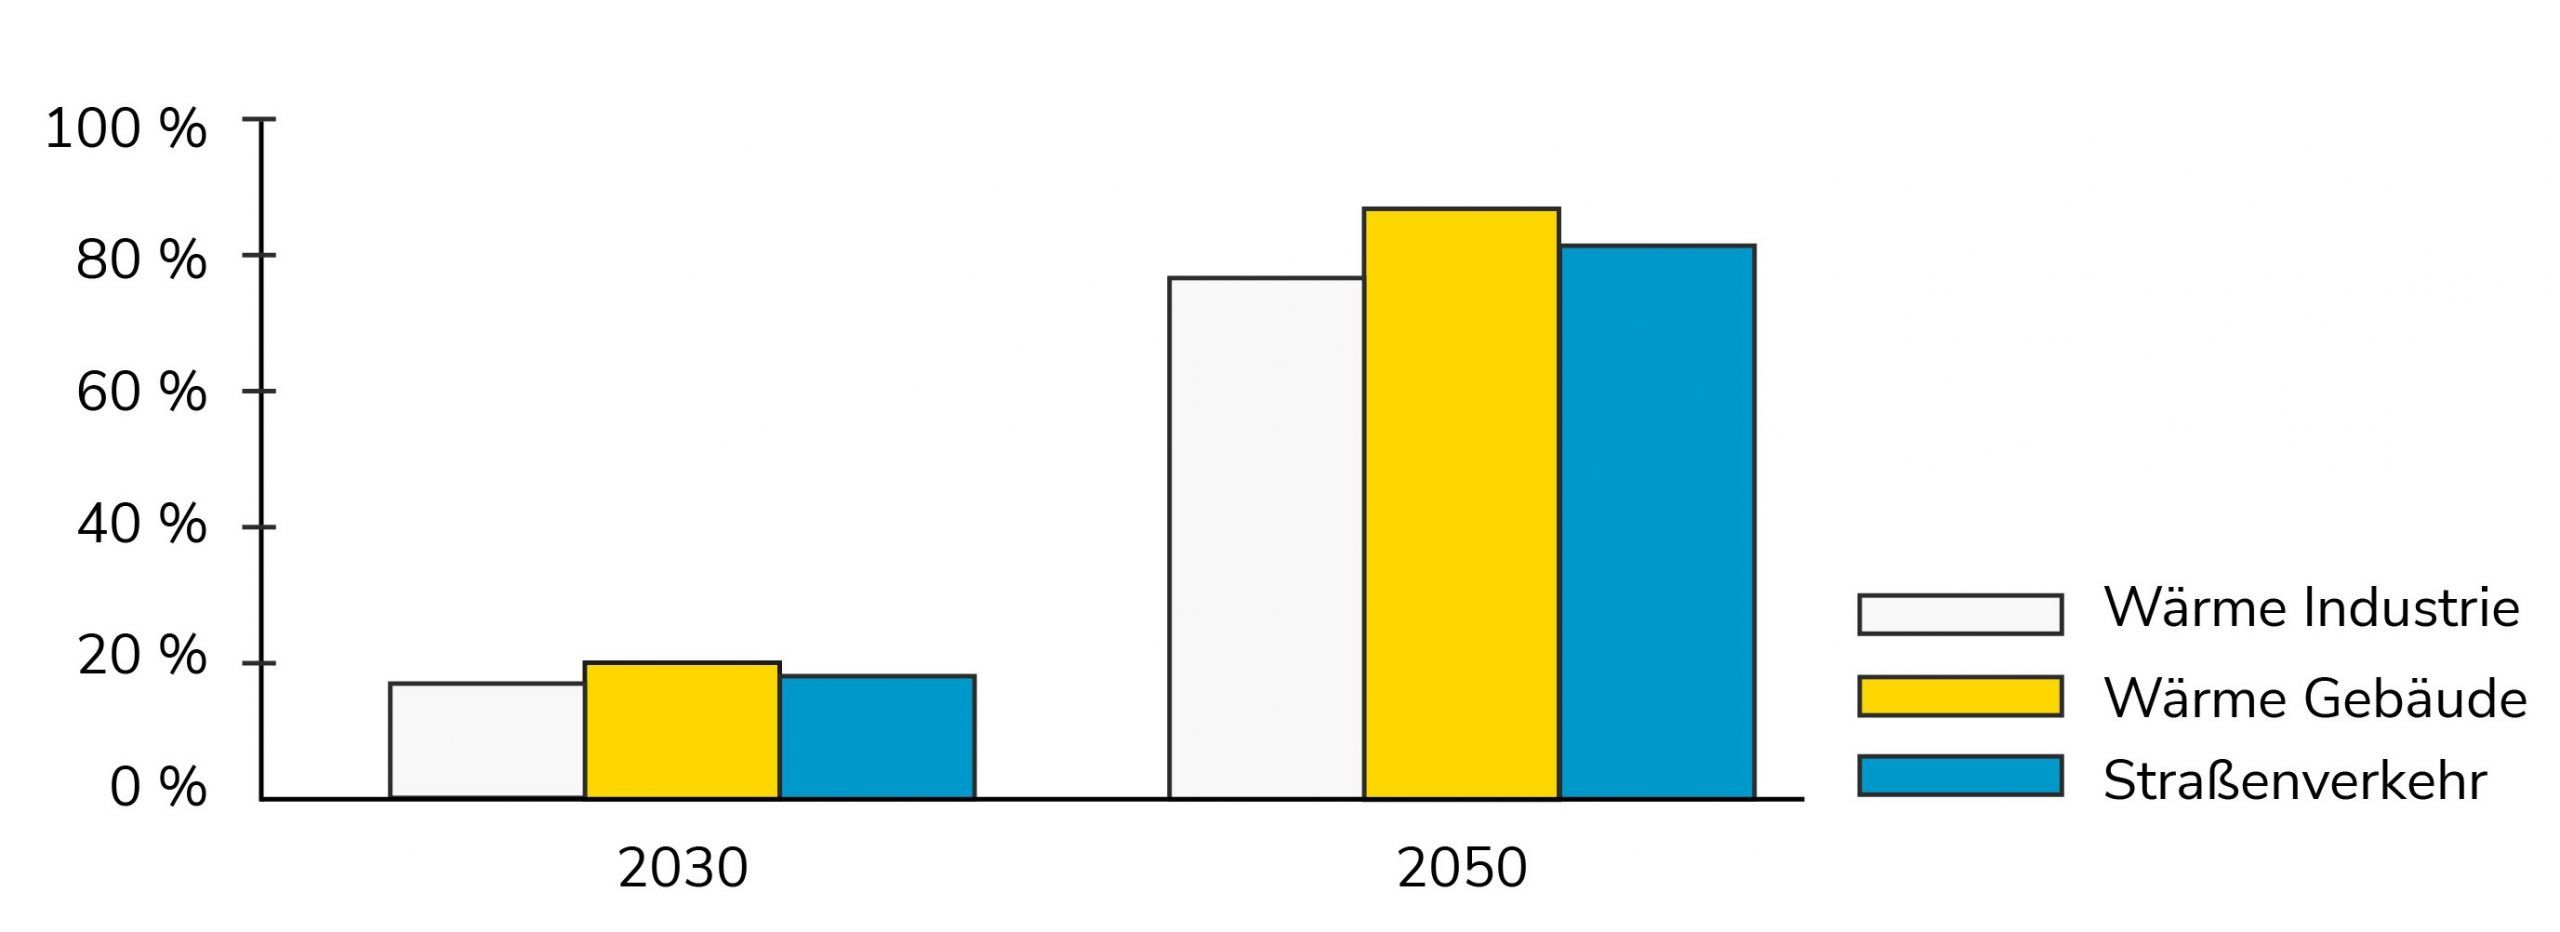 Die Grafik zeigt die prognostizierte Zunahme der Elektrifizierung der Wärmeerzeugung und in der Mobilität für die Jahre 2030 und 2050.